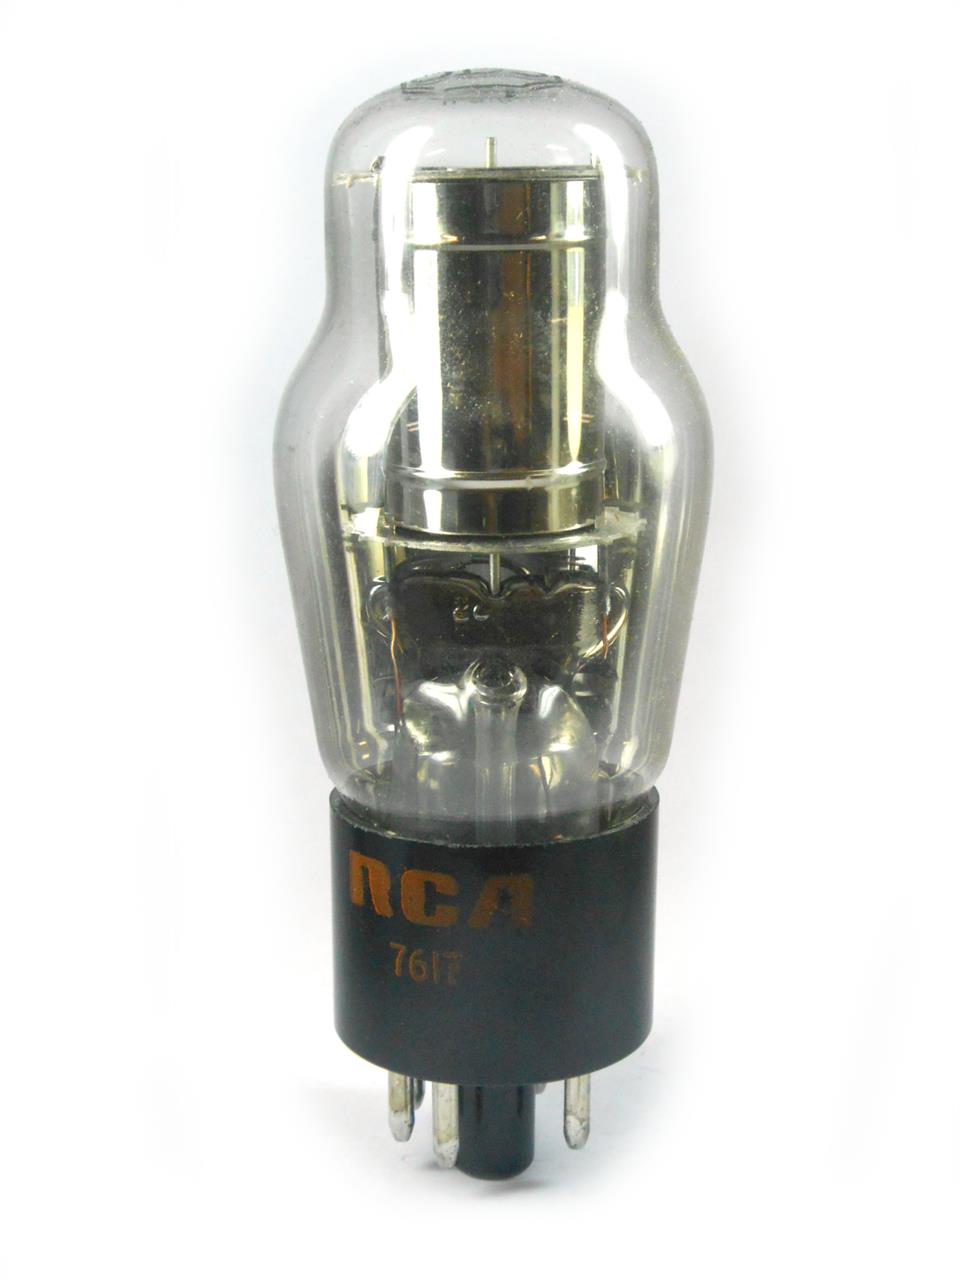 Válvulas Reguladores a gás rarefeito - Válvula 0D3 VR150 RCA